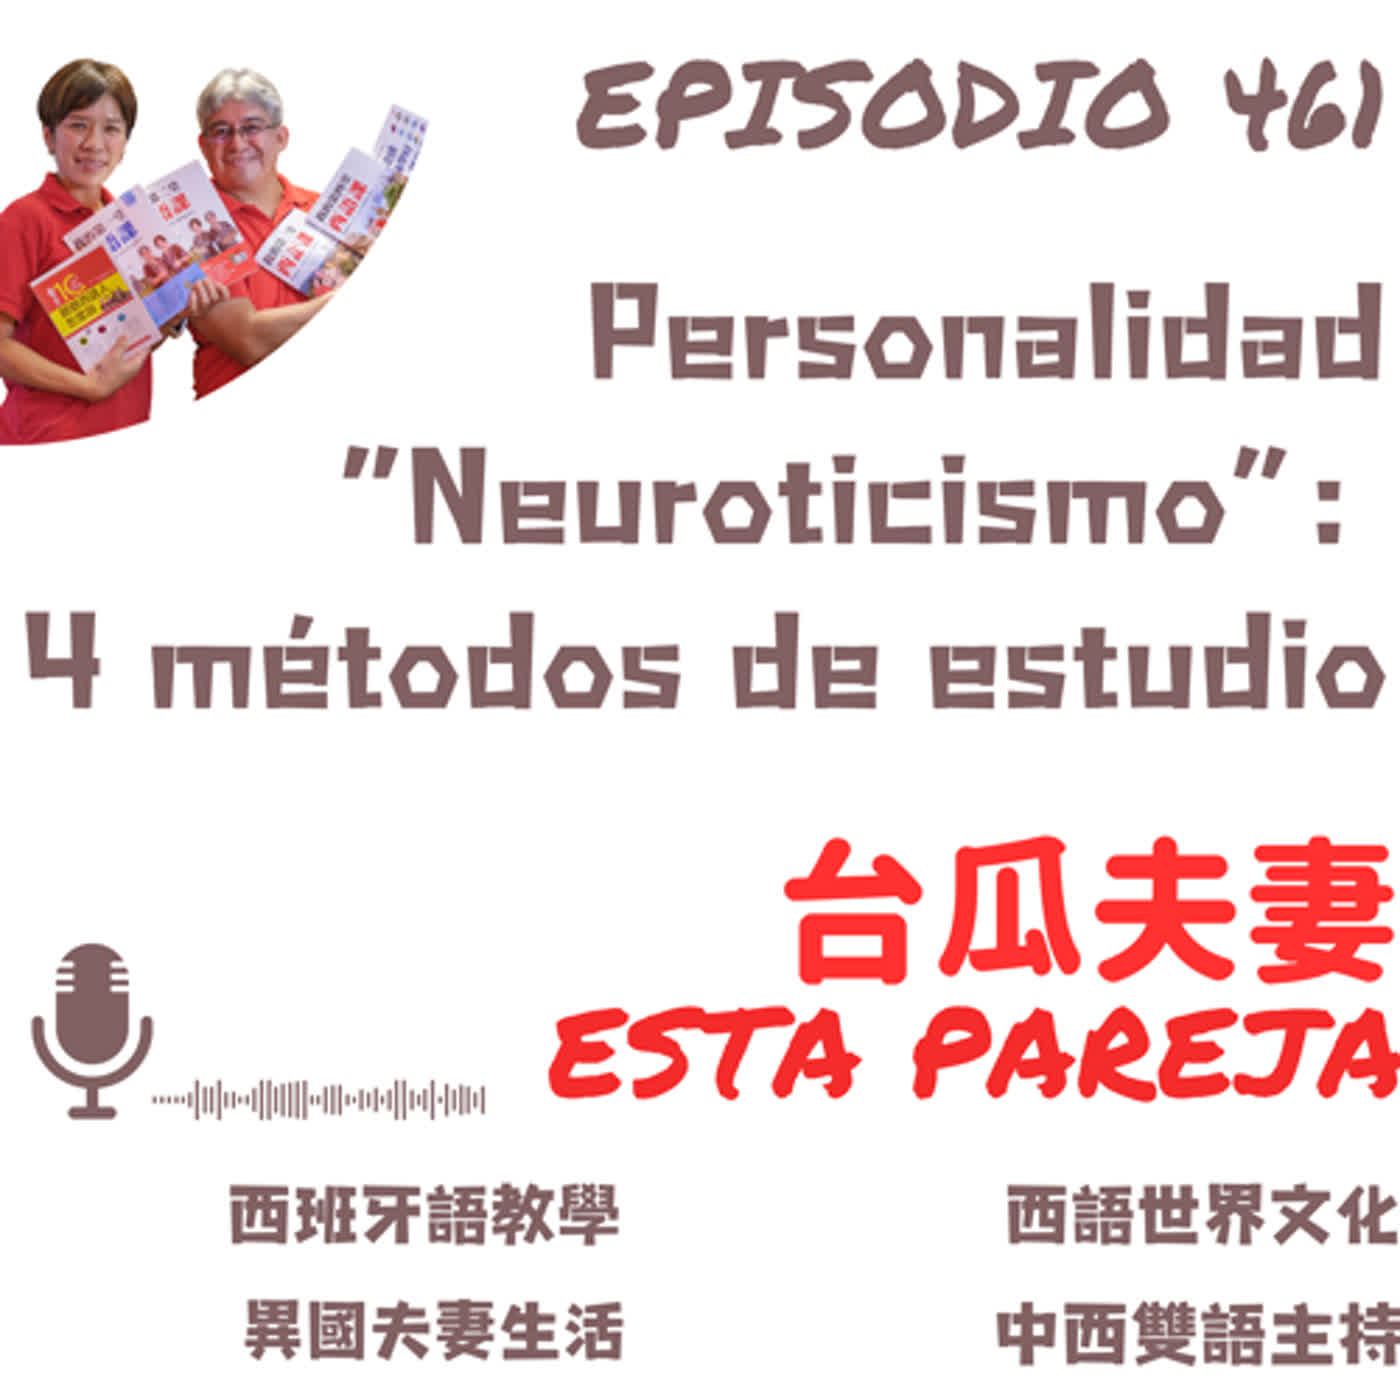 461. Personalidad “Neuroticismo”:  4 métodos de estudio